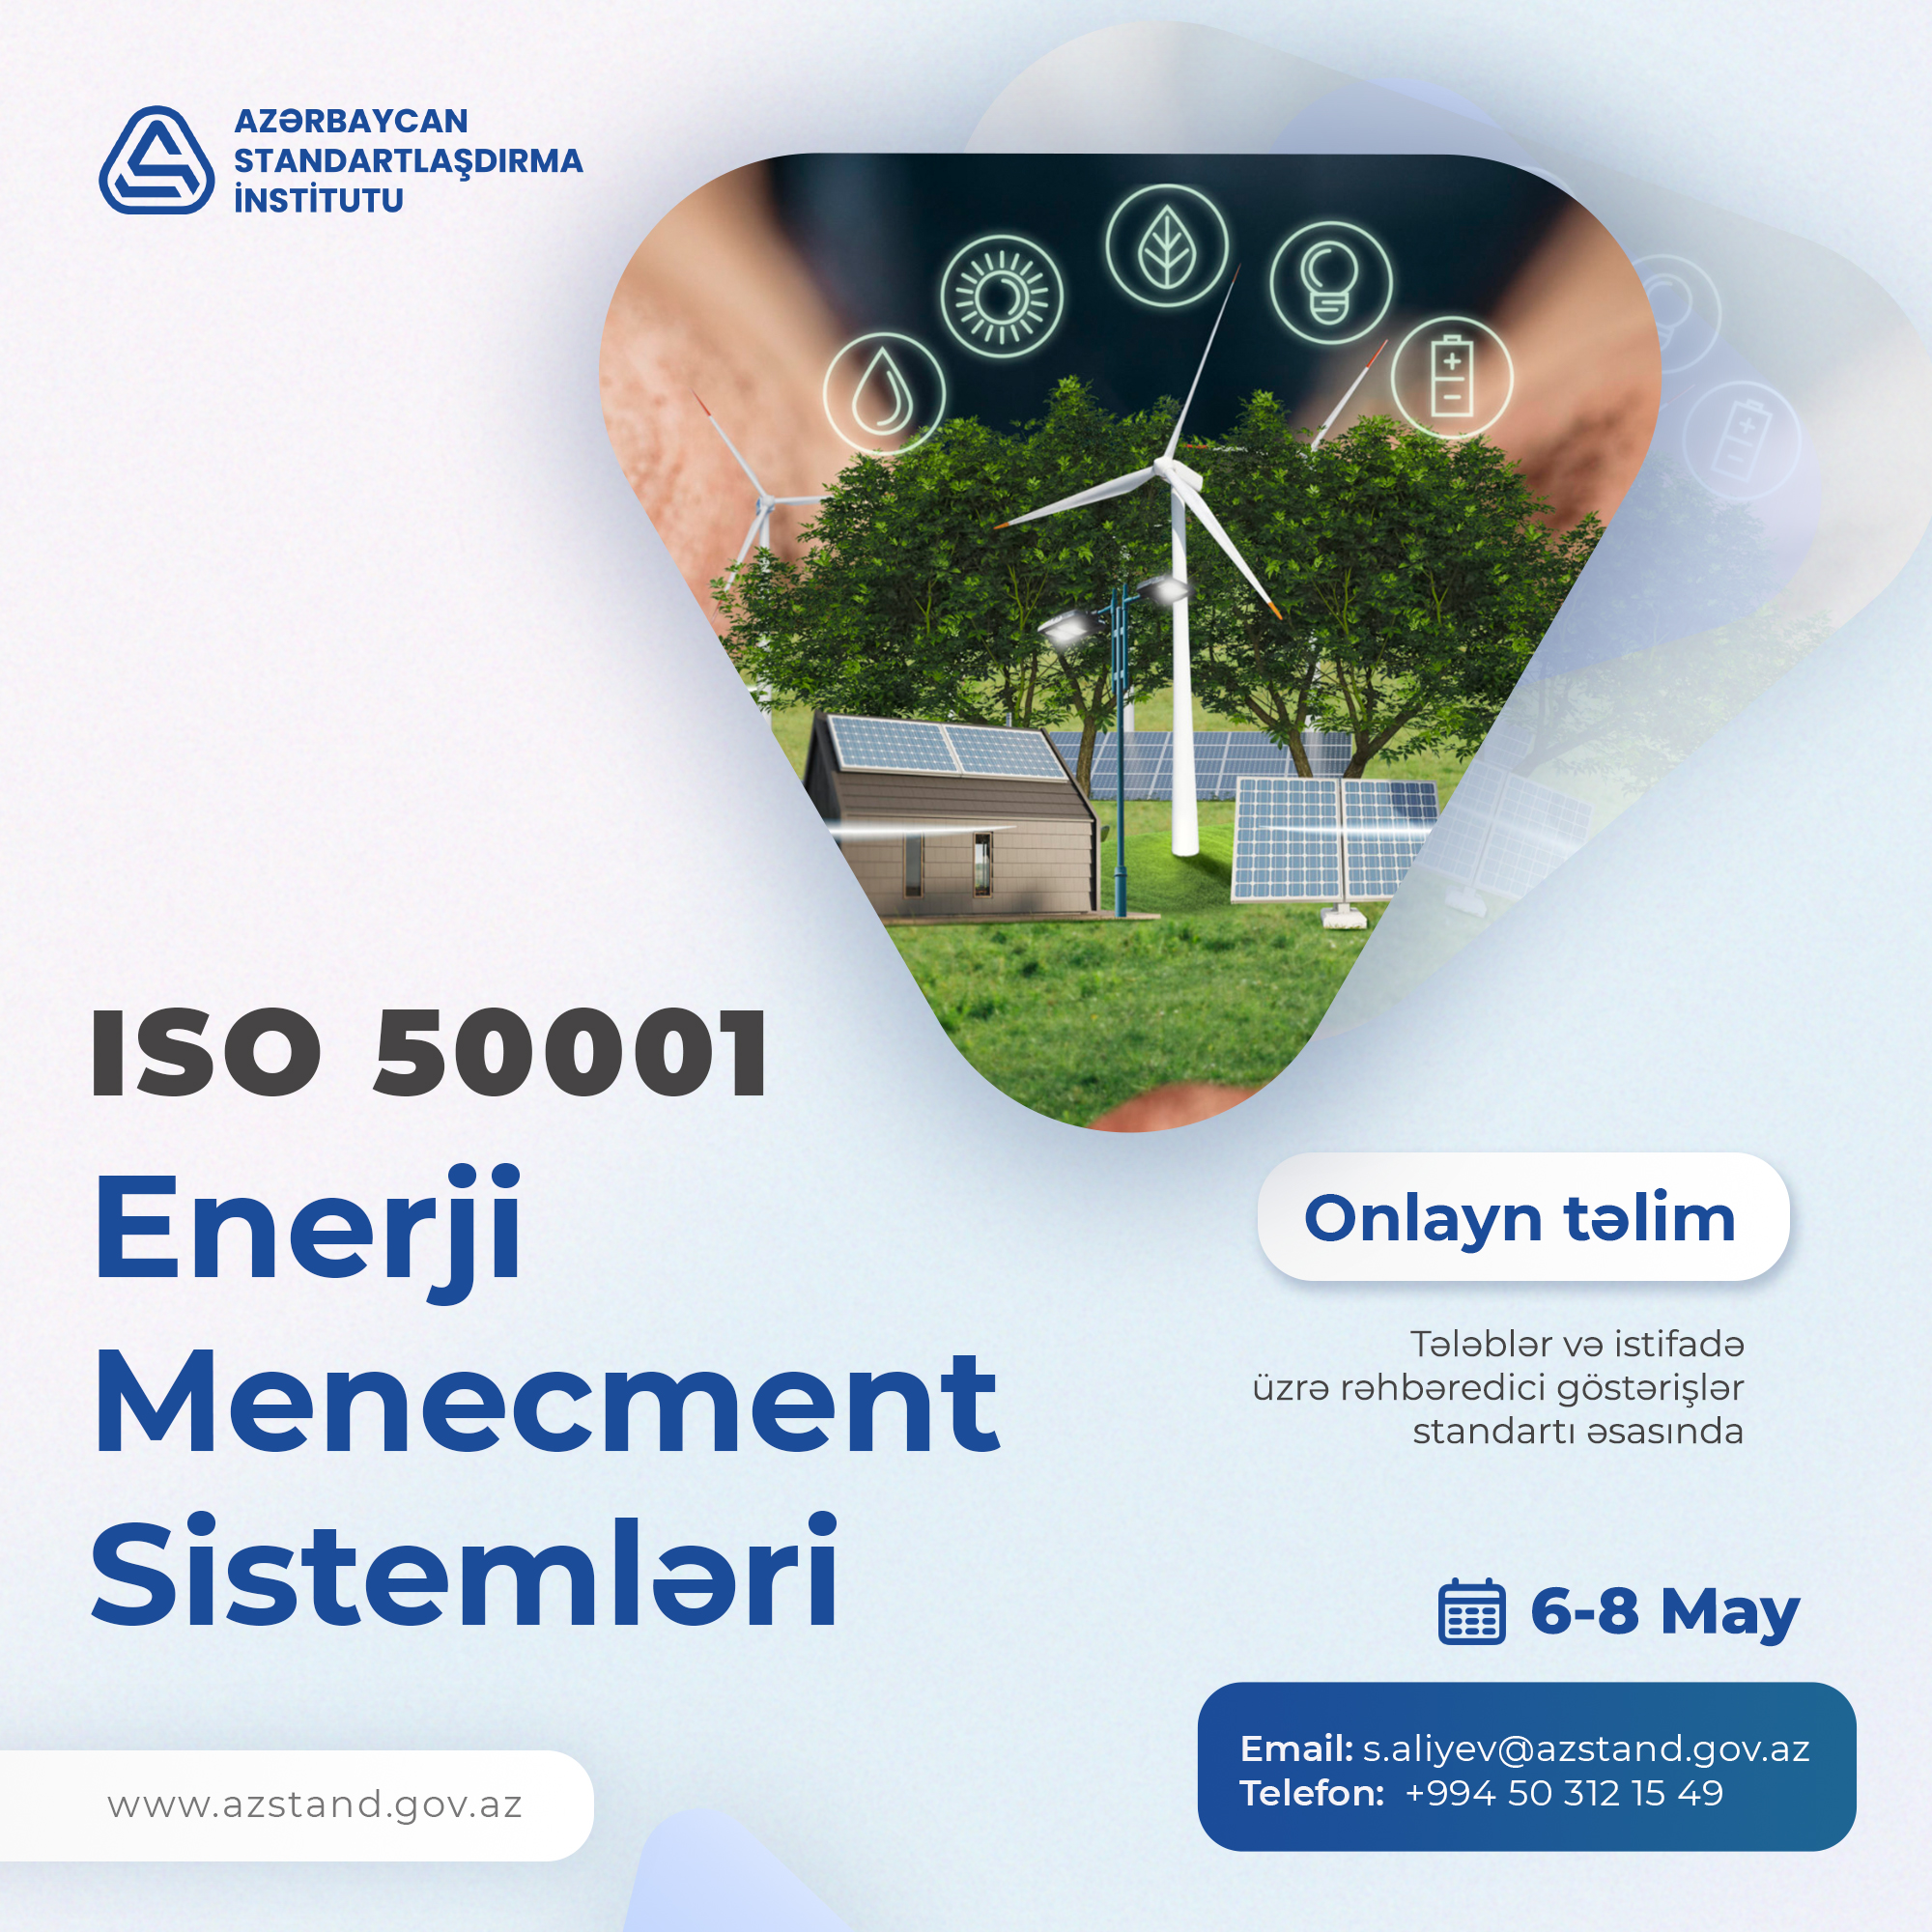 ISO/IEC 50001:2018 Enerji Menecment Sistemləri - tələblər və istifadə üzrə rəhbəredici göstərişlər standartı əsasında təlim.